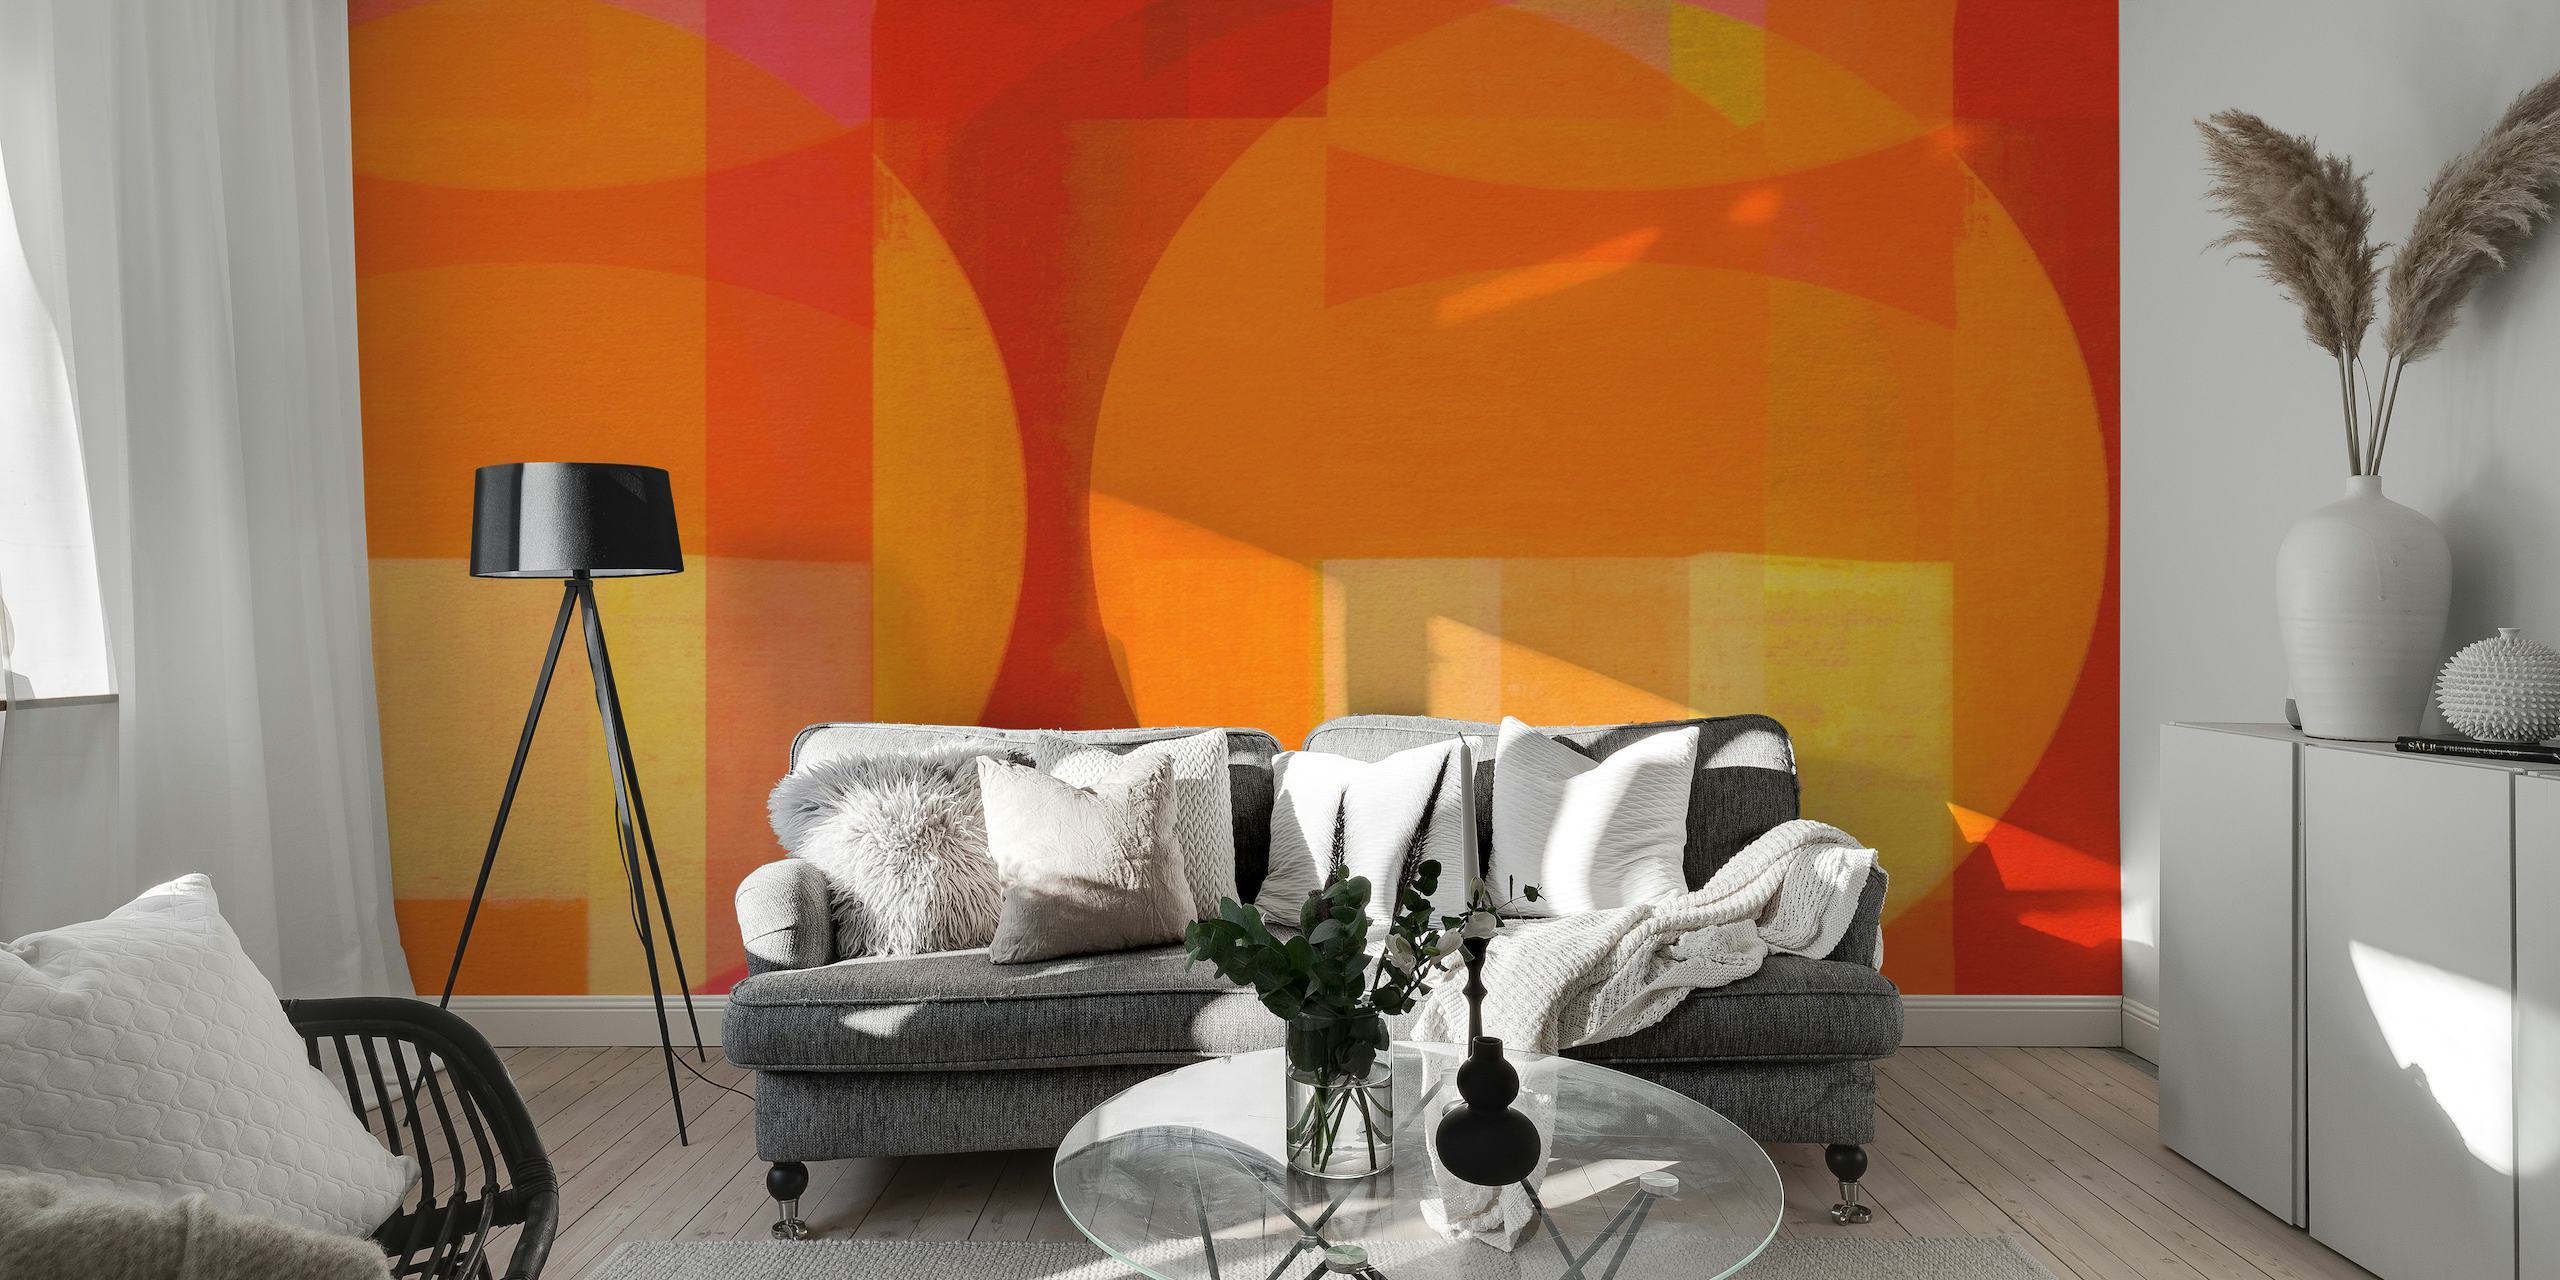 Abstrakcyjna fototapeta w stylu Bauhaus w żywej mieszance czerwonych, pomarańczowych i żółtych geometrycznych kształtów.